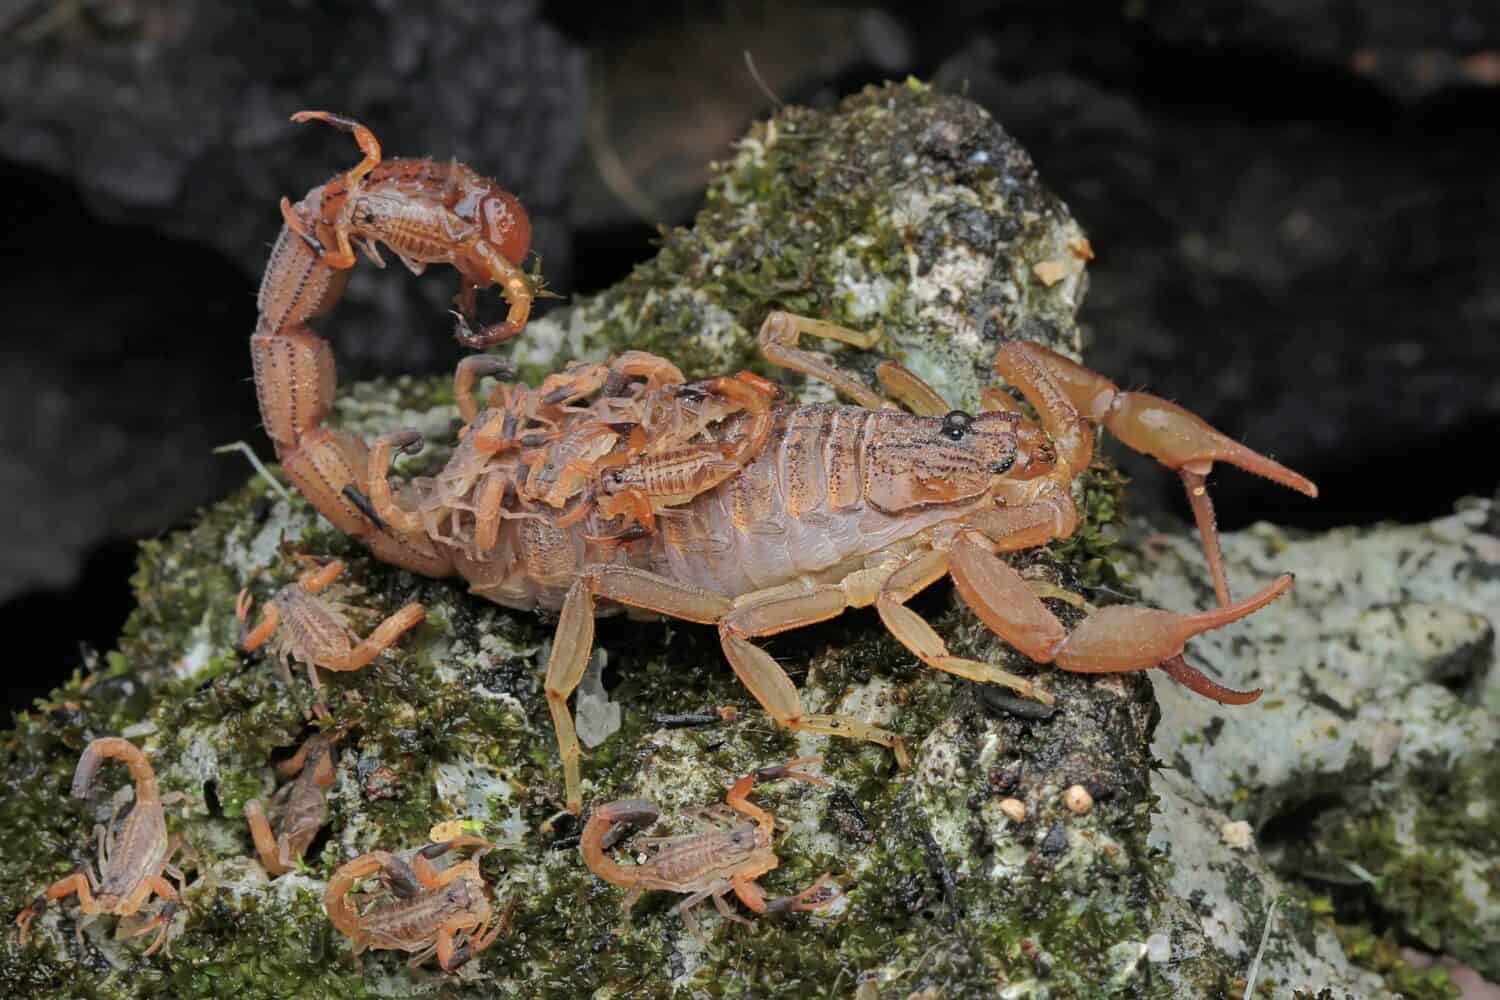 Una madre scorpione tiene in braccio i suoi piccoli per proteggerli dagli attacchi dei predatori.  Questo animale velenoso ha il nome scientifico Hottentotta hottentotta.